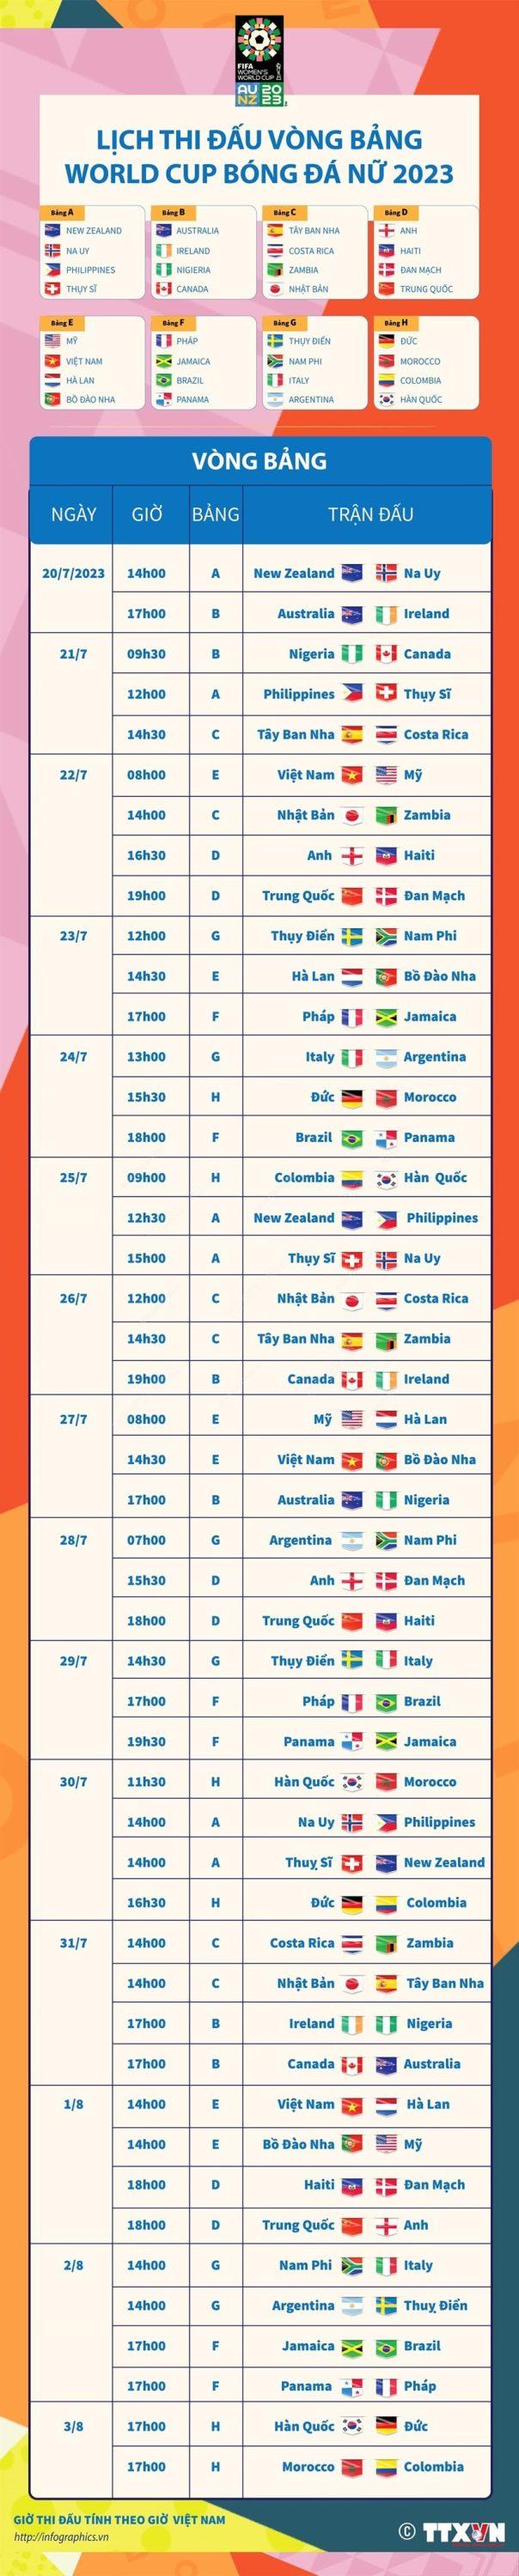 Lich thi dau vong bang World Cup Nu 2023 604x3000 - Lịch thi đấu vòng bảng World Cup Nữ 2023